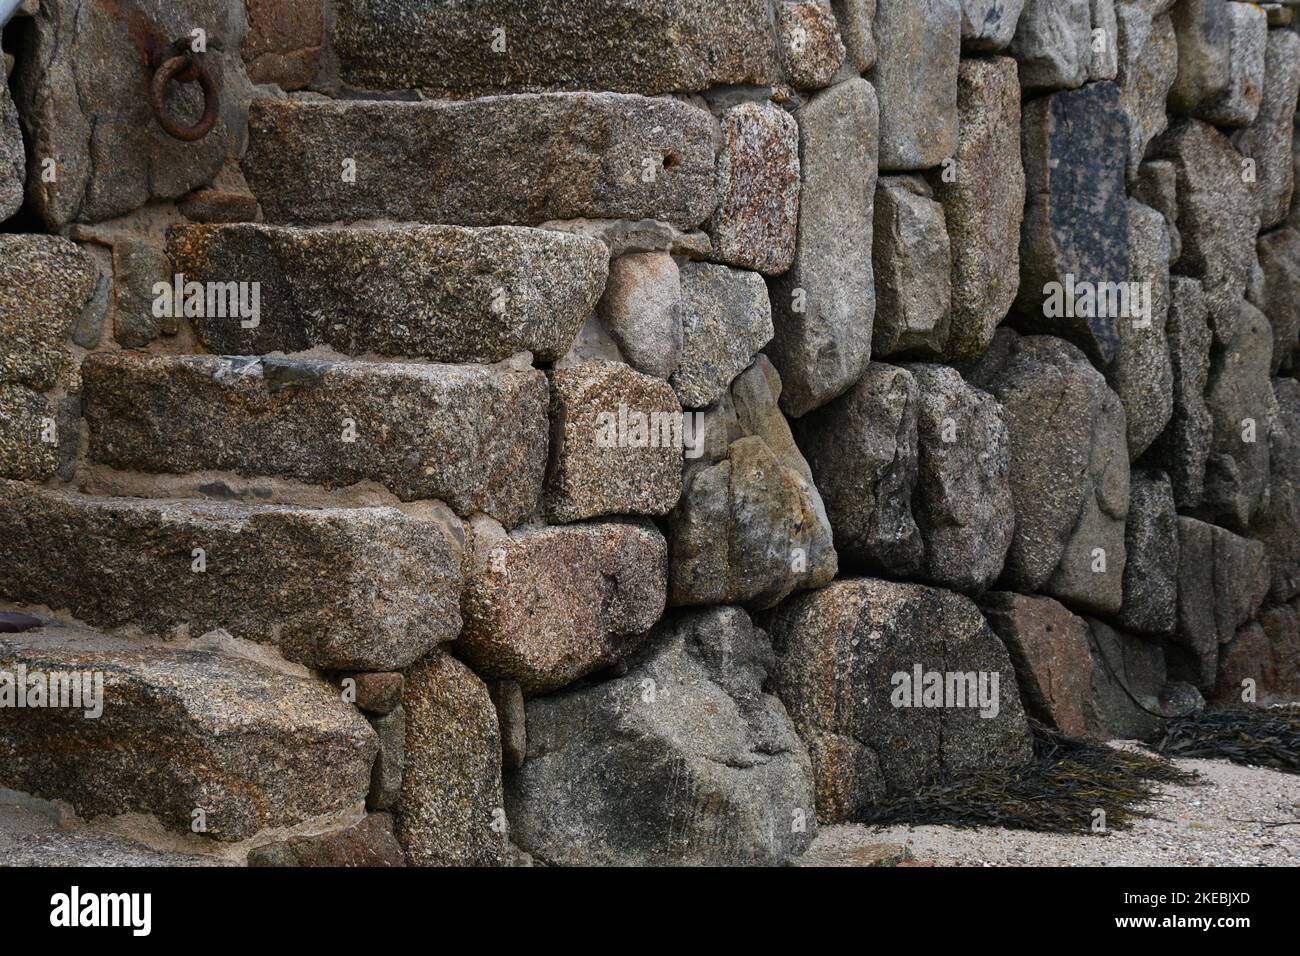 Blocchi di granito formano la banchina e gradini del Porto di New Grimsby sull'isola di Tresco nelle isole di Scilly archepelago al largo della costa di Cornw Foto Stock